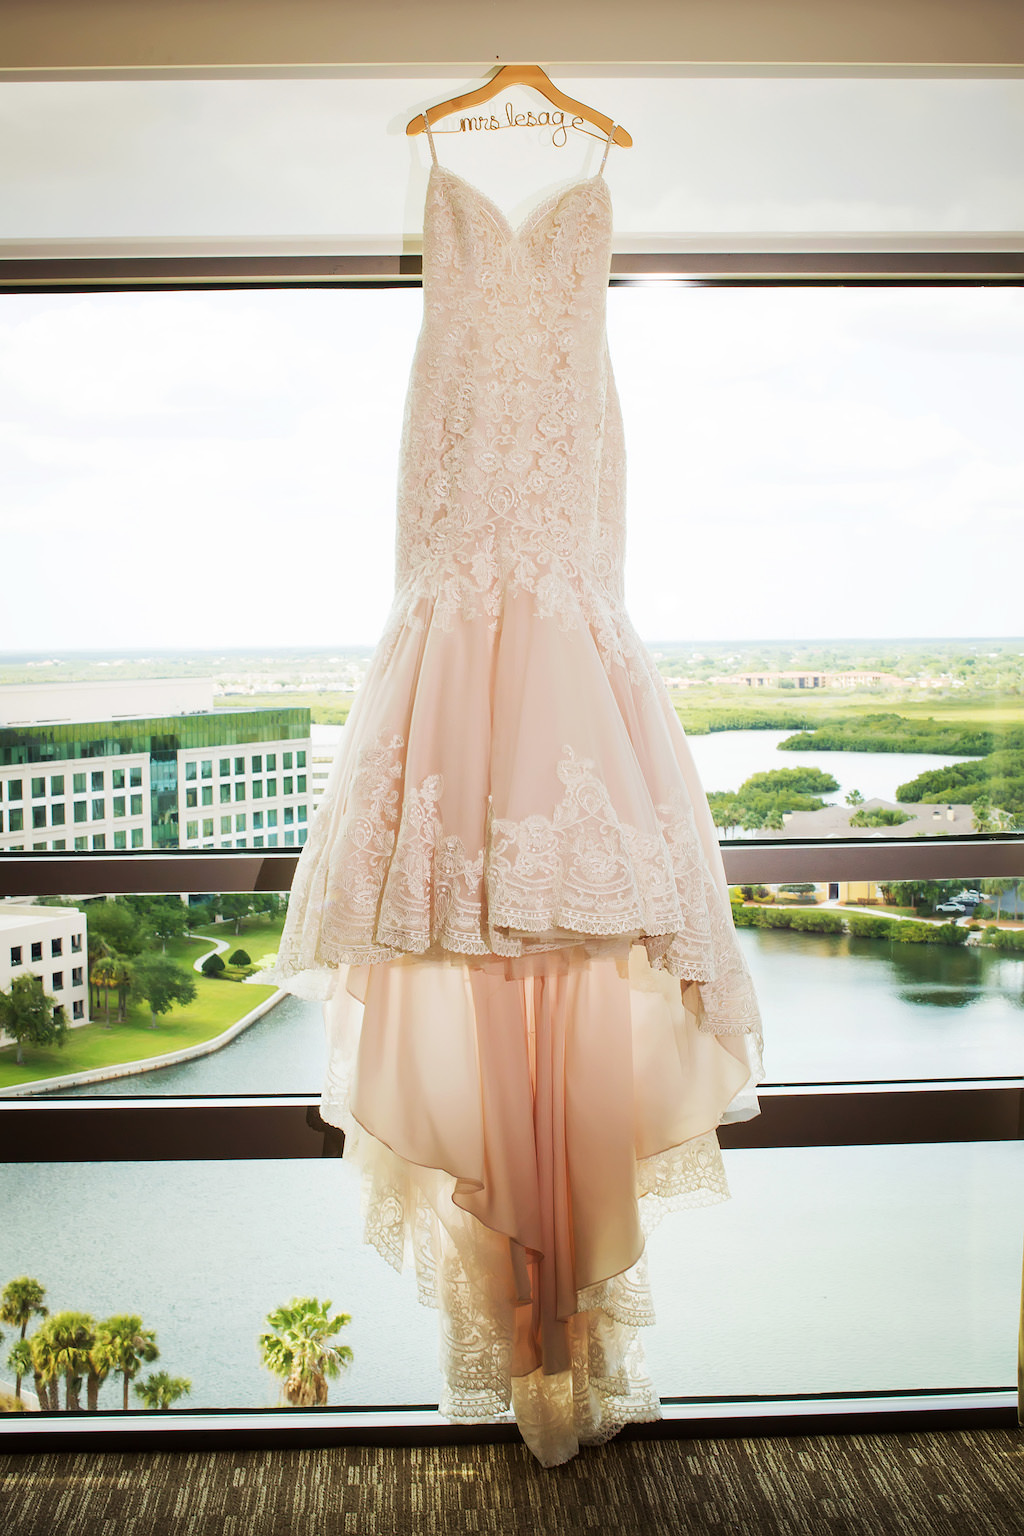 Blush Lace Mermaid Wedding Dress on Custom Hanger at Westin Tampa Bay